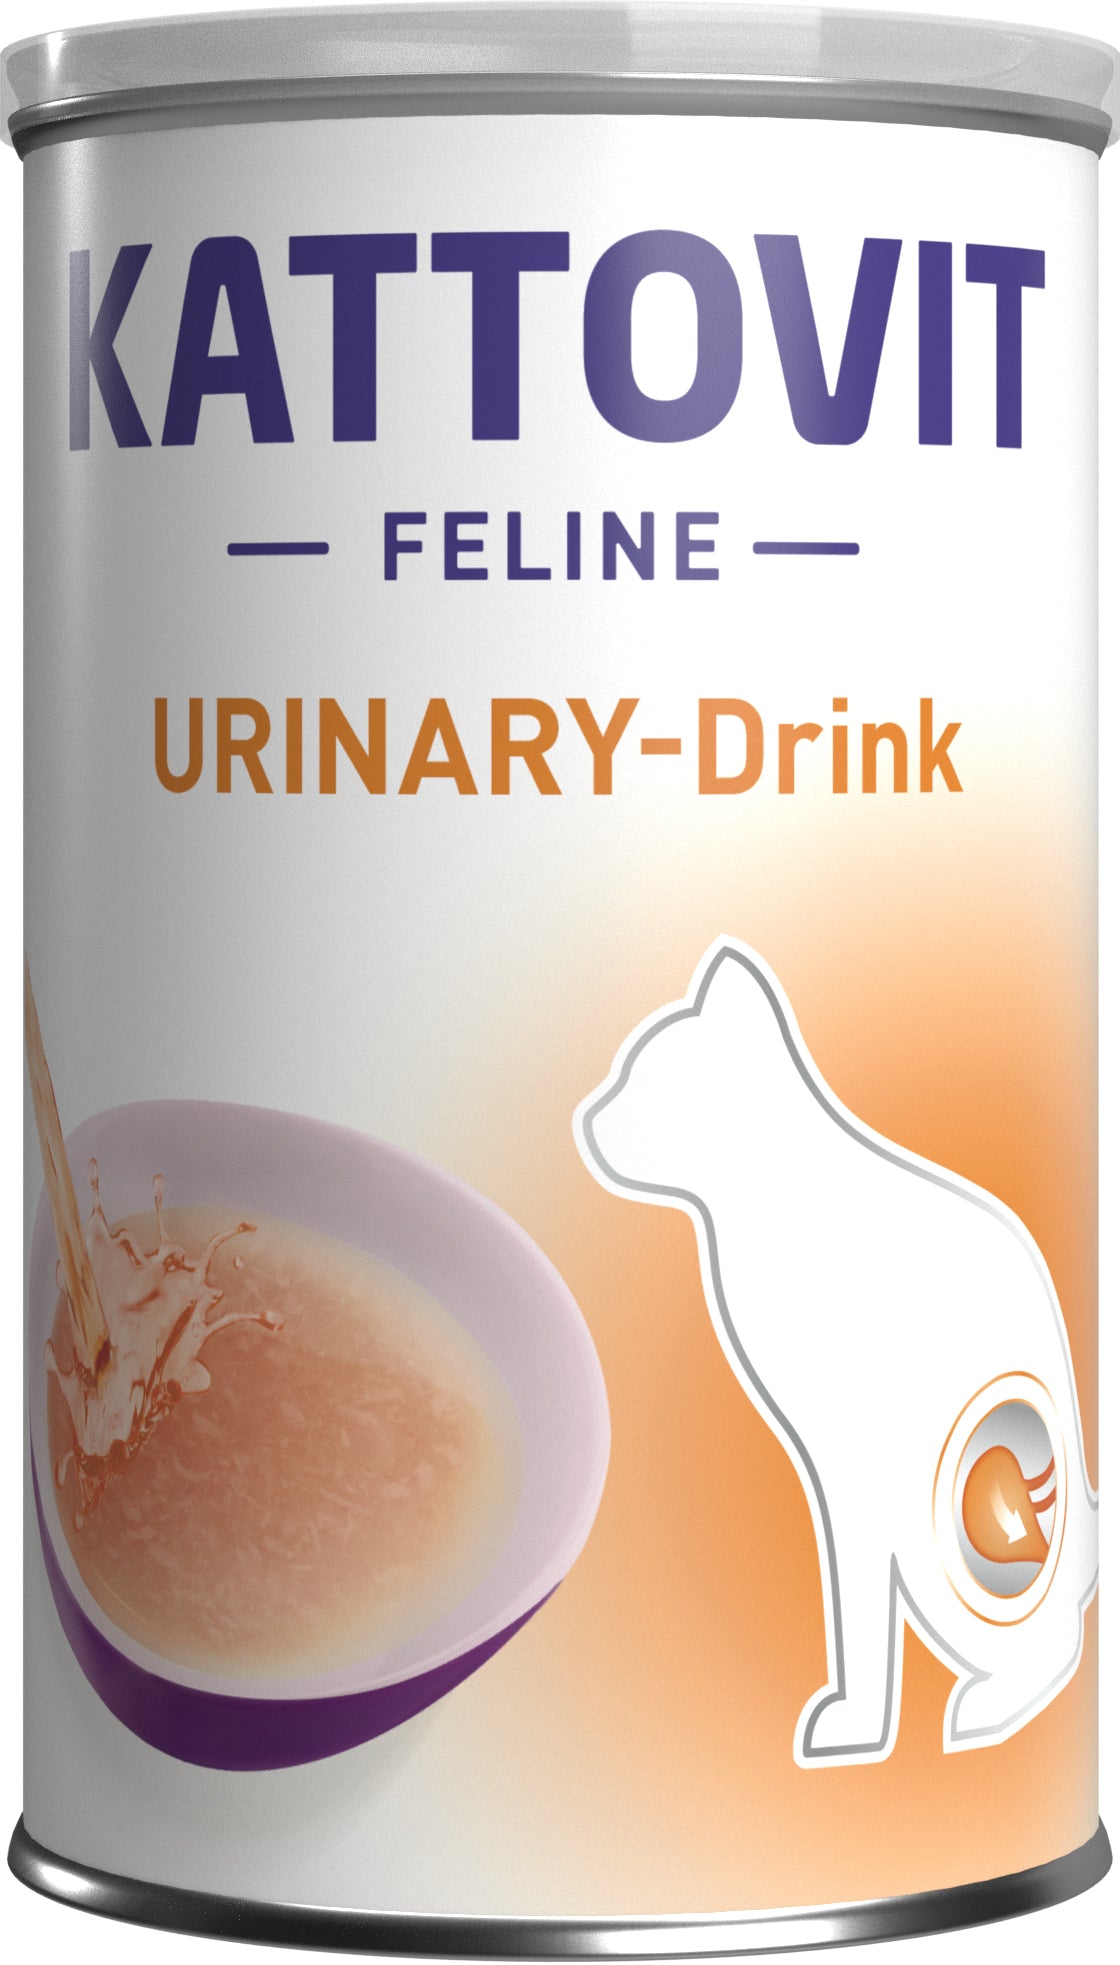 Artikel mit dem Namen Kattovit Urinary Drink im Shop von zoo.de , dem Onlineshop für nachhaltiges Hundefutter und Katzenfutter.